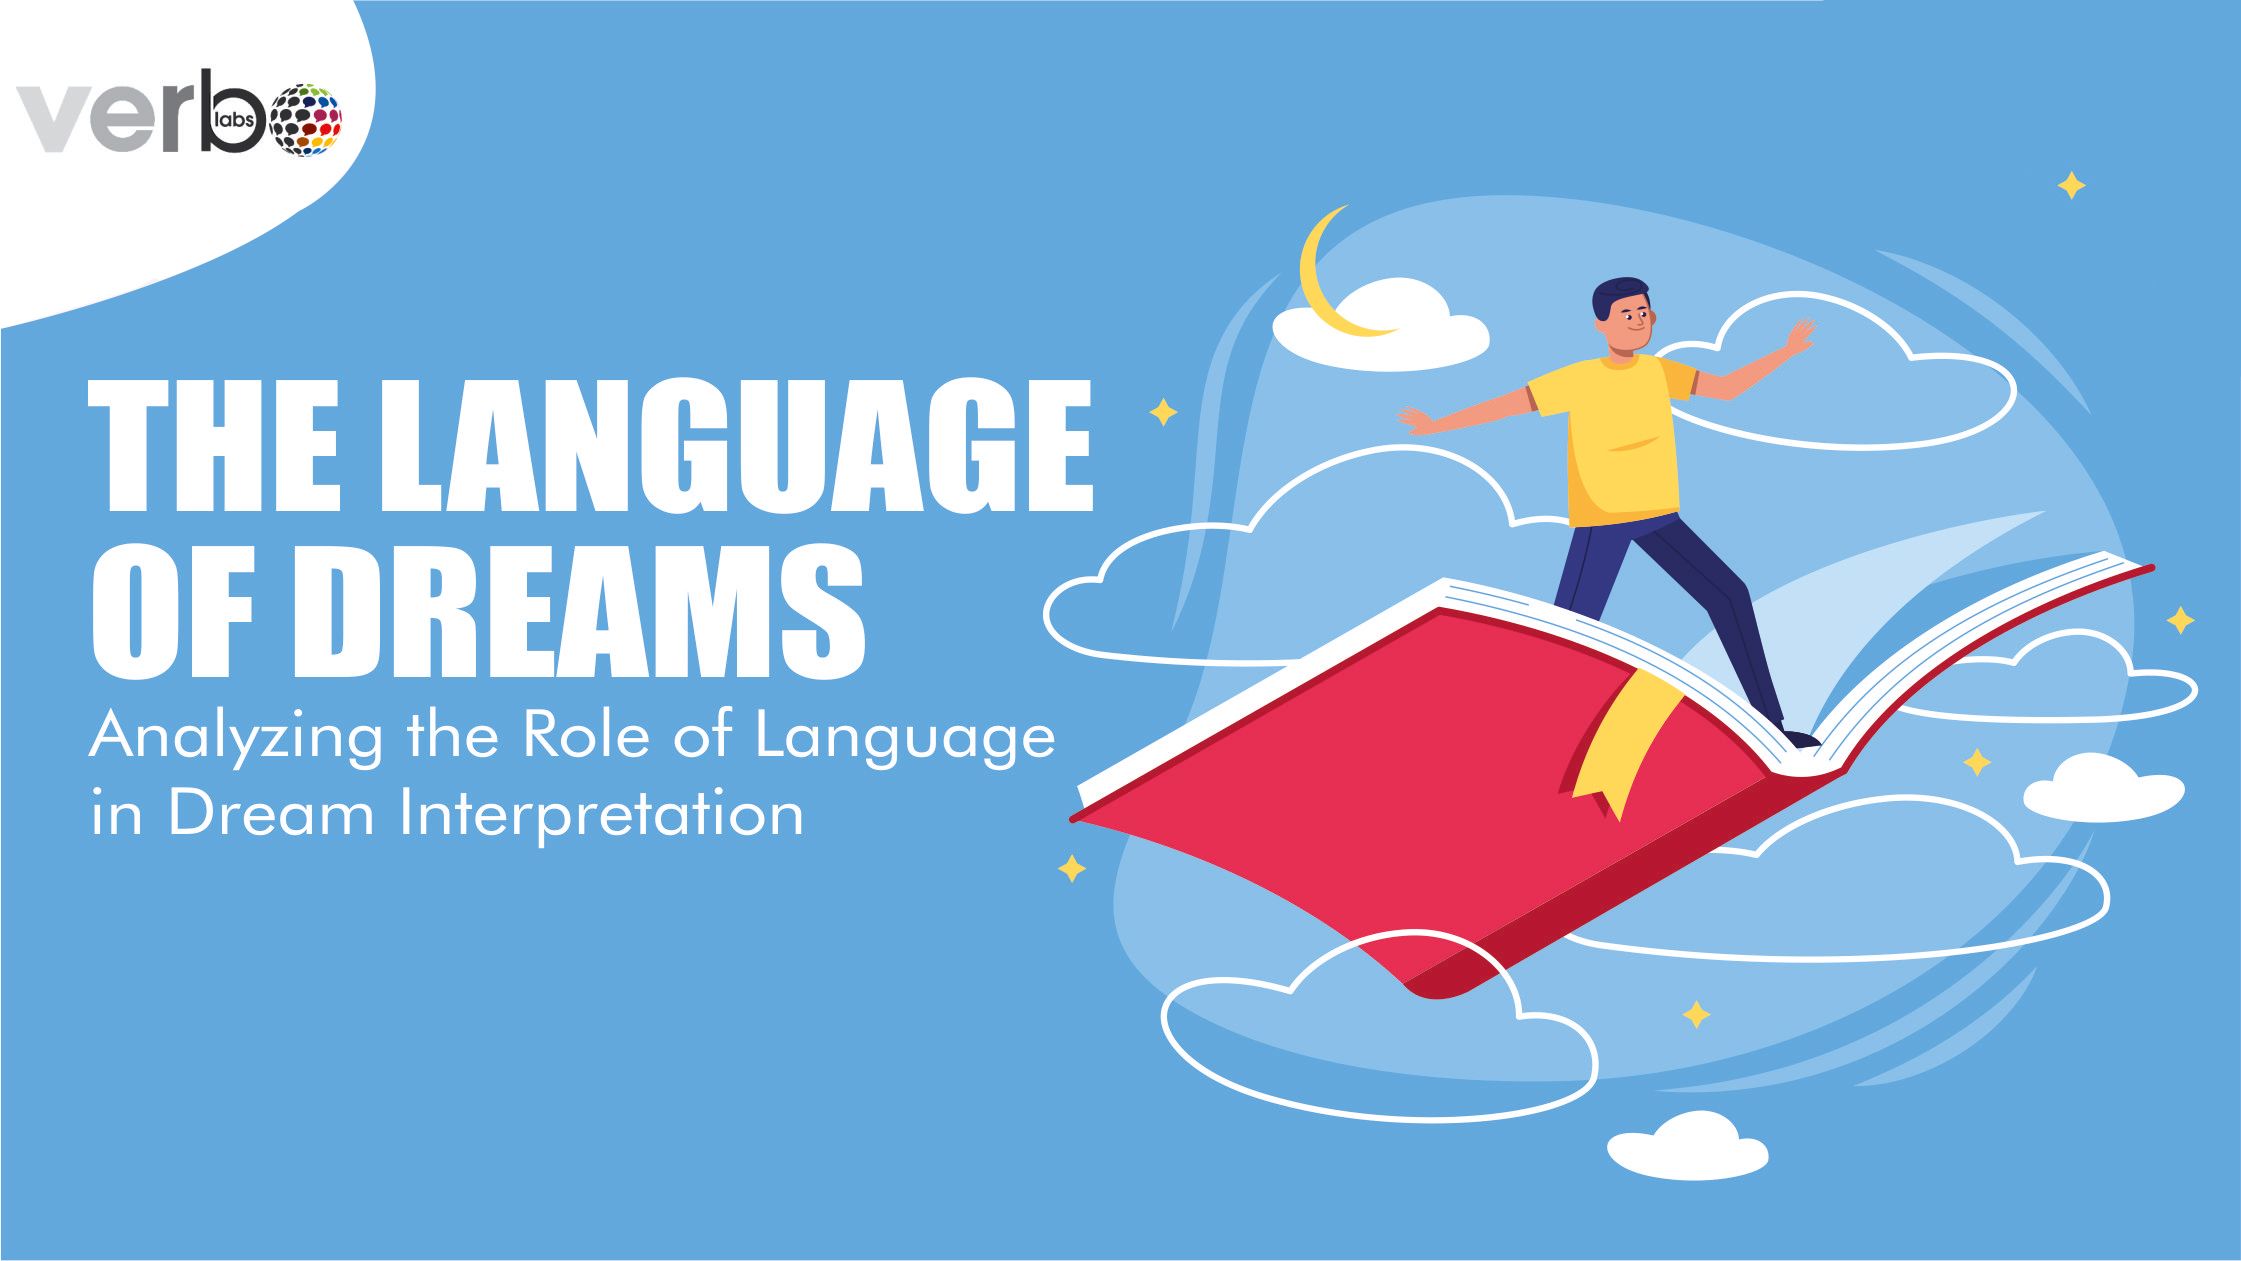 Blog describing language of dreams